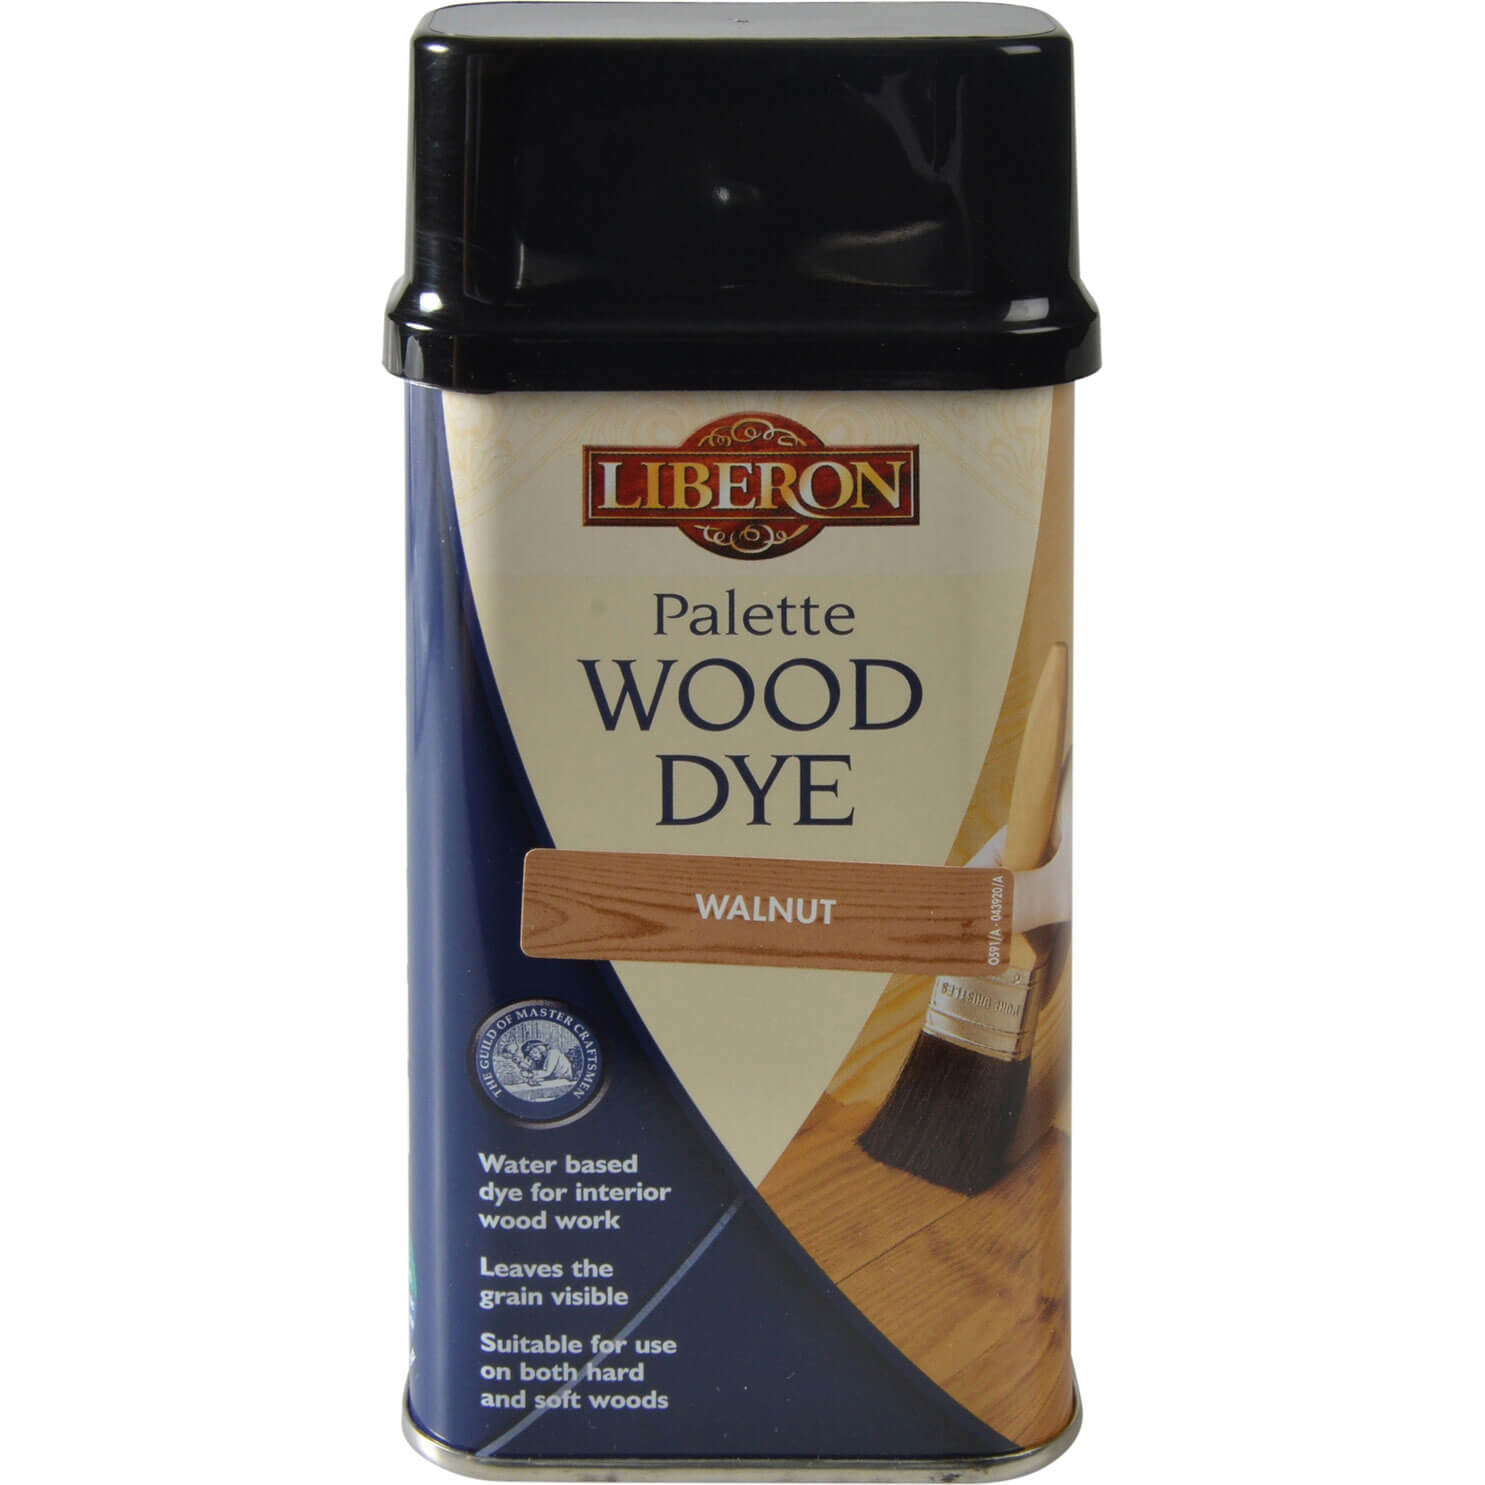 Image of Liberon Palette Wood Dye Walnut 250ml